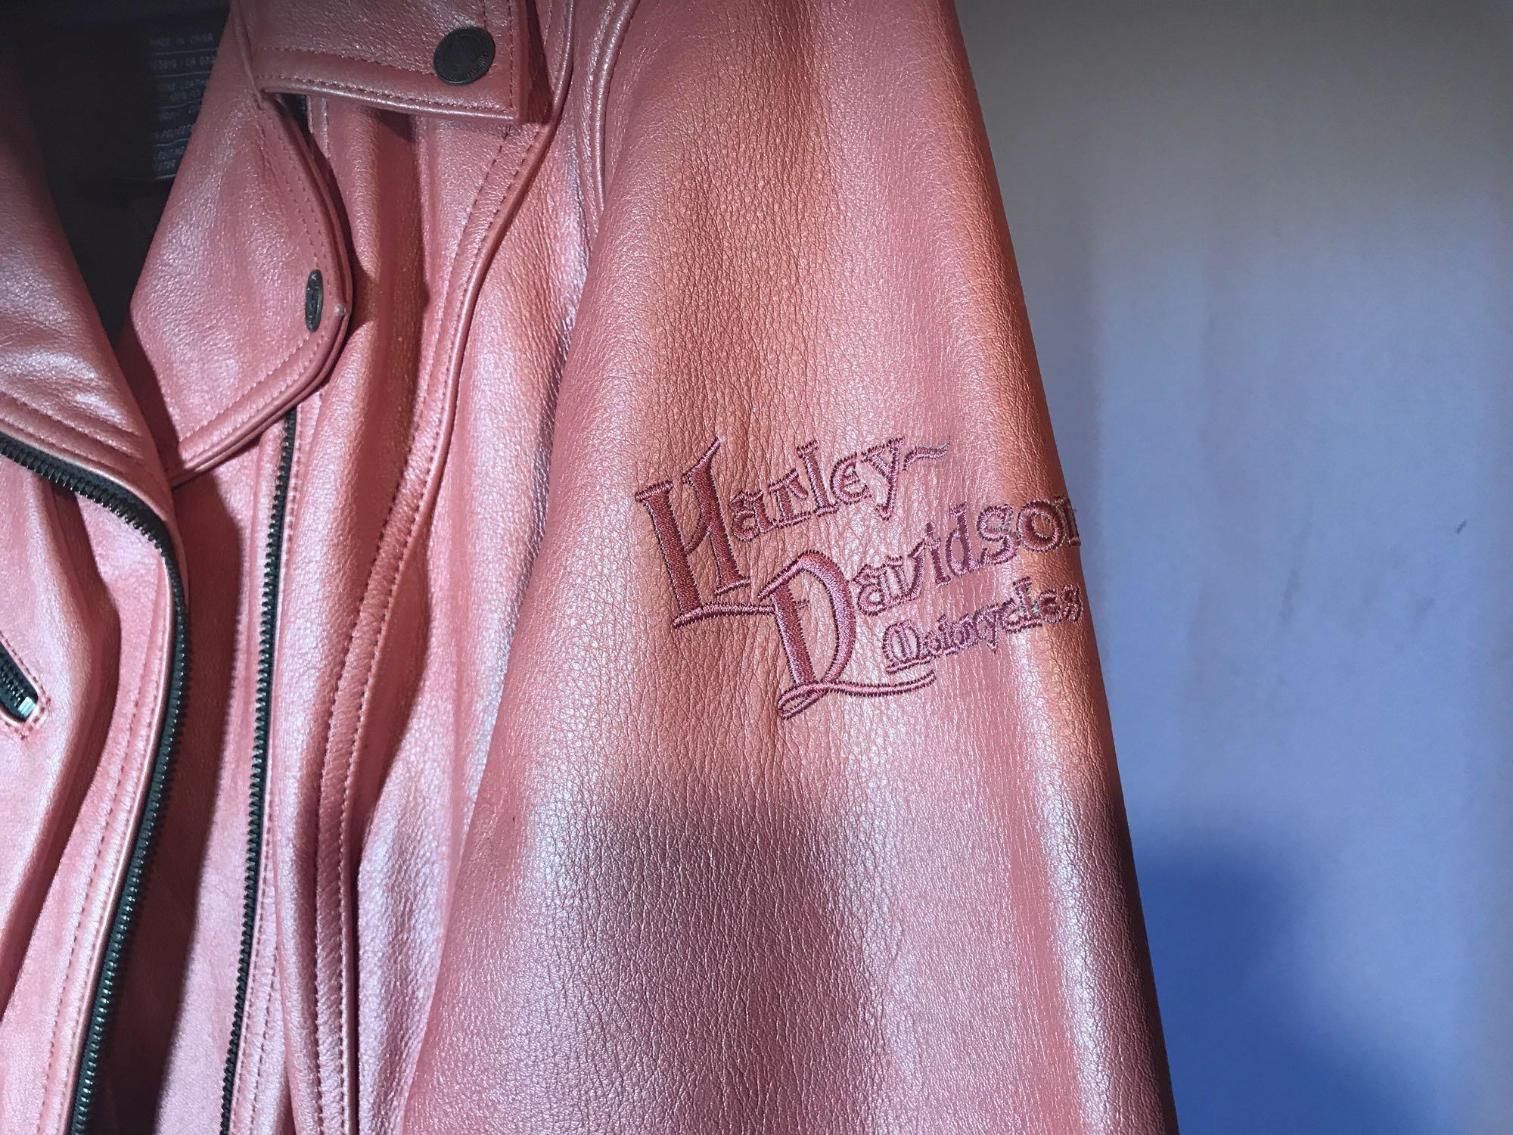 Image for Vintage Harley Davidson Leather Jacket